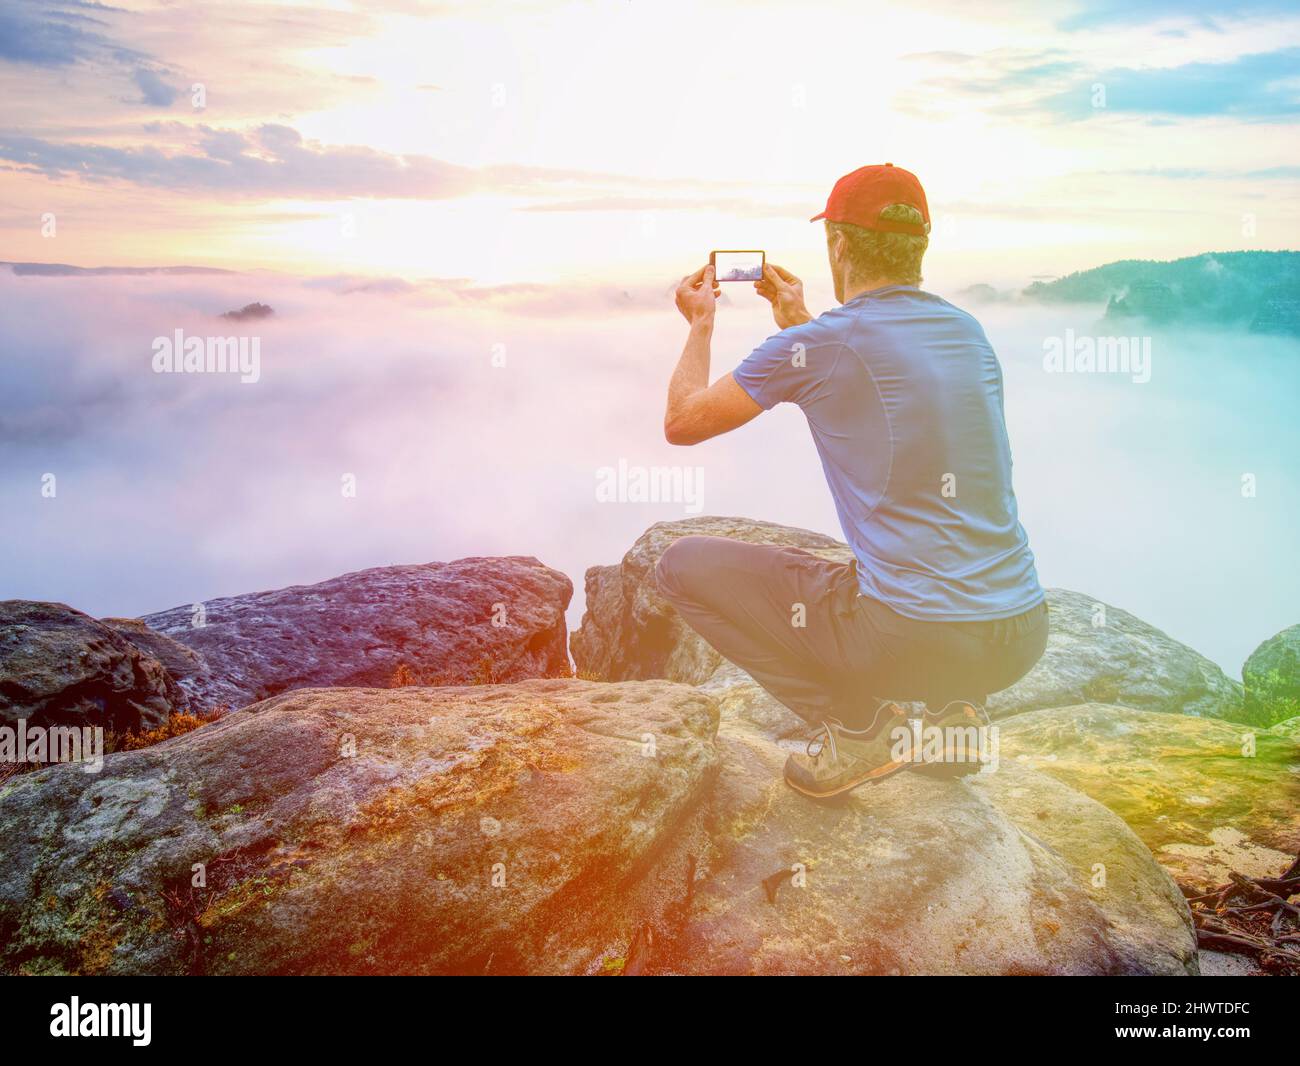 El hombre se sienta y toma una foto telefónica de la mañana malvada valle de montaña. Hiken en uso al aire libre. Iluminación abstracta, llamaradas coloridas. Foto de stock